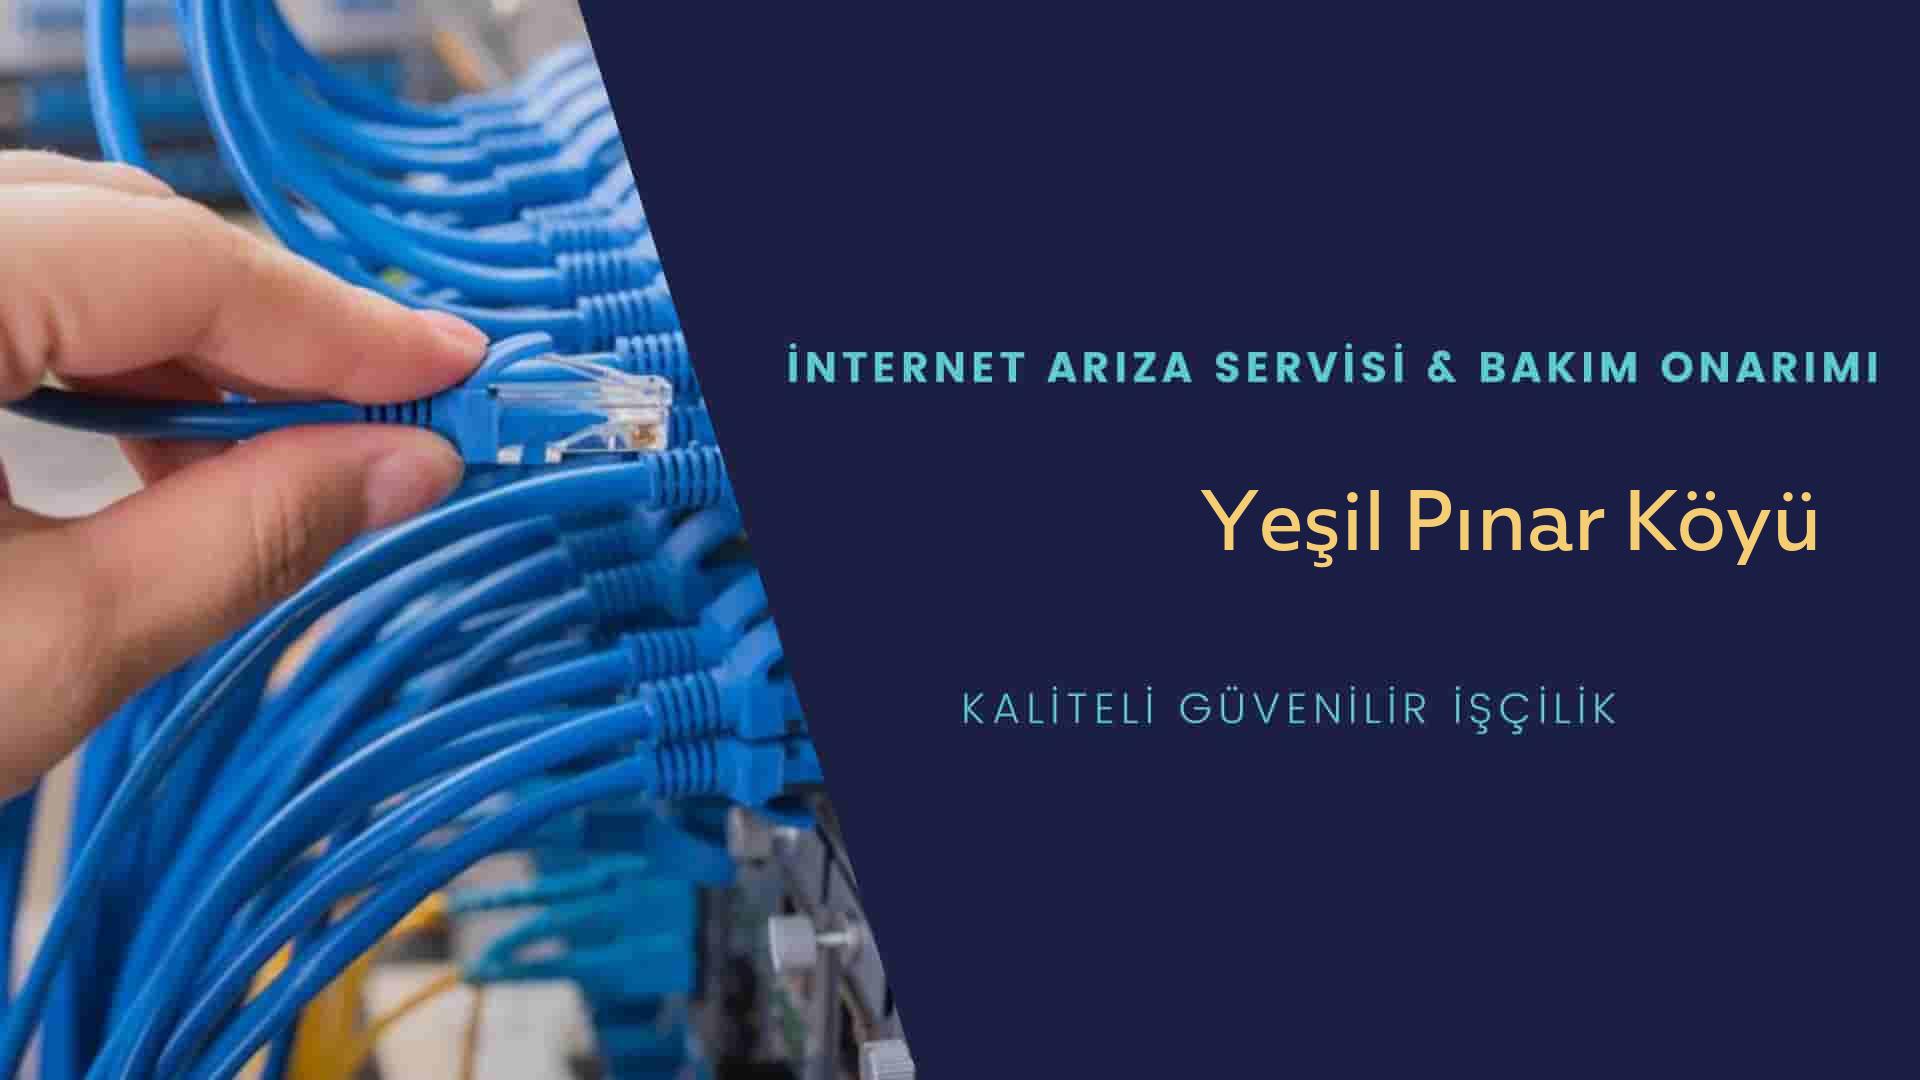 Yeşil Pınar Köyü internet kablosu çekimi yapan yerler veya elektrikçiler mi? arıyorsunuz doğru yerdesiniz o zaman sizlere 7/24 yardımcı olacak profesyonel ustalarımız bir telefon kadar yakındır size.